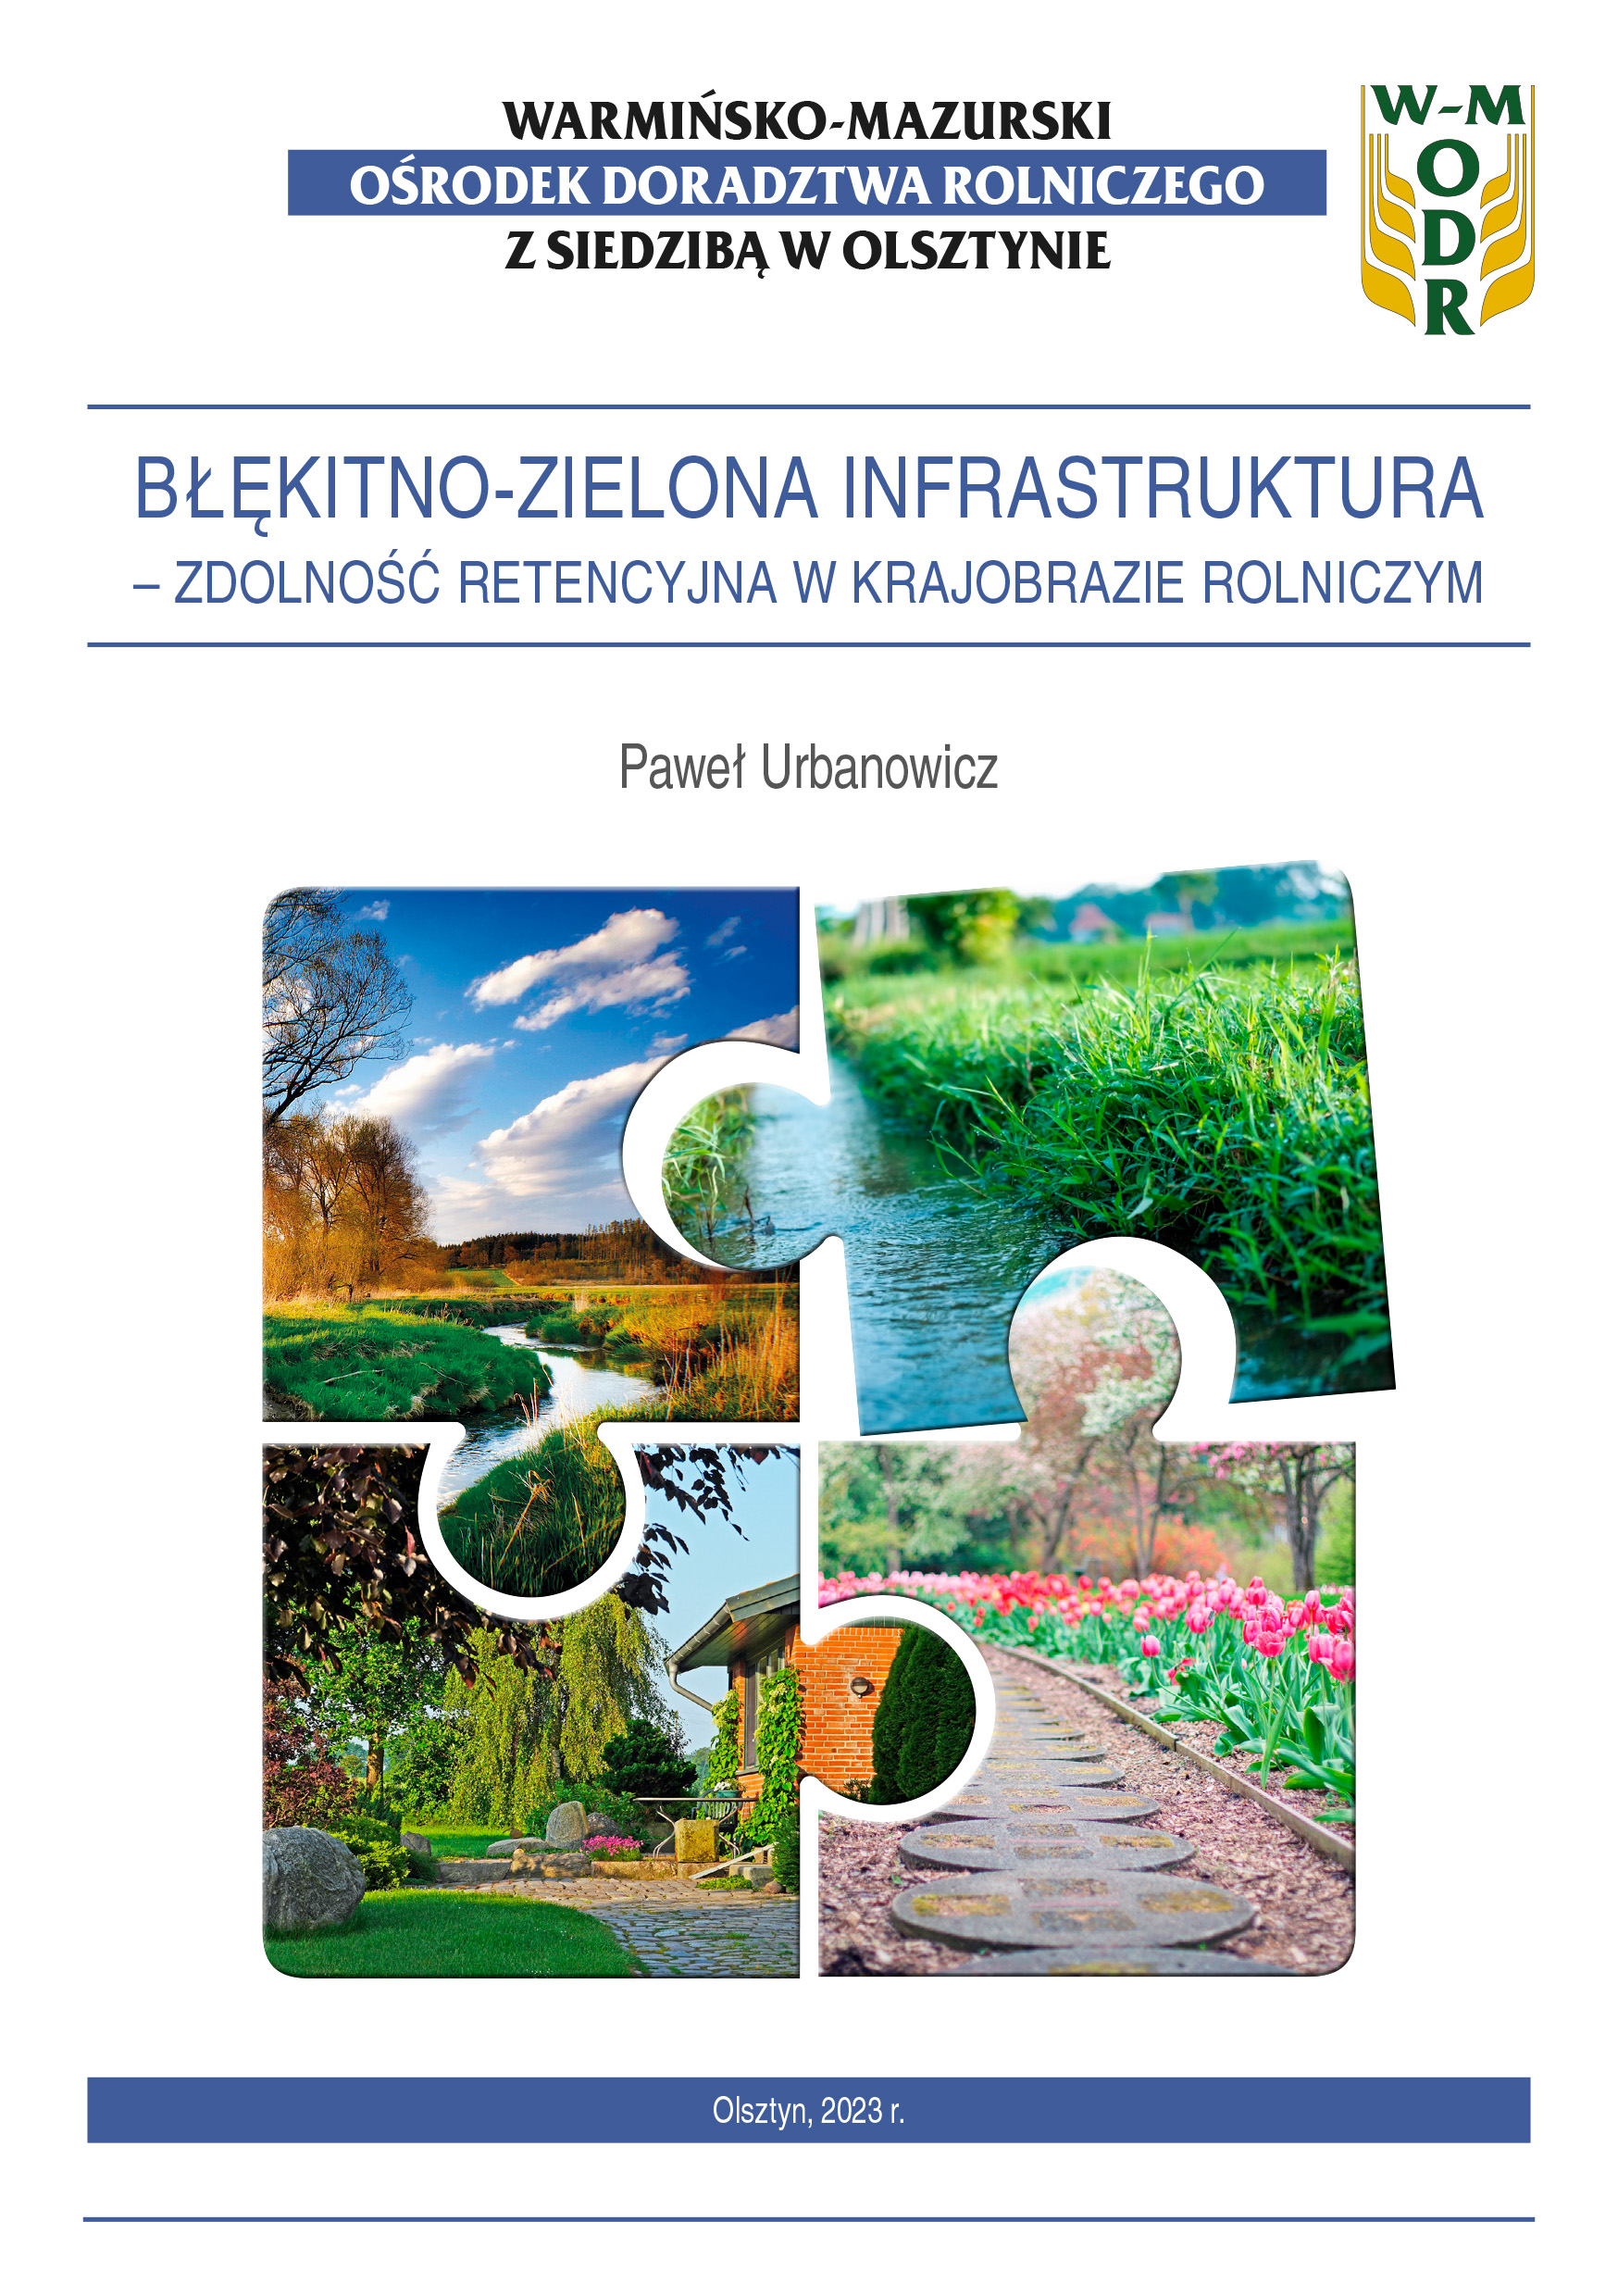 Błękitno-zielona infrastruktura – zdolność retencyjna w krajobrazie rolniczym